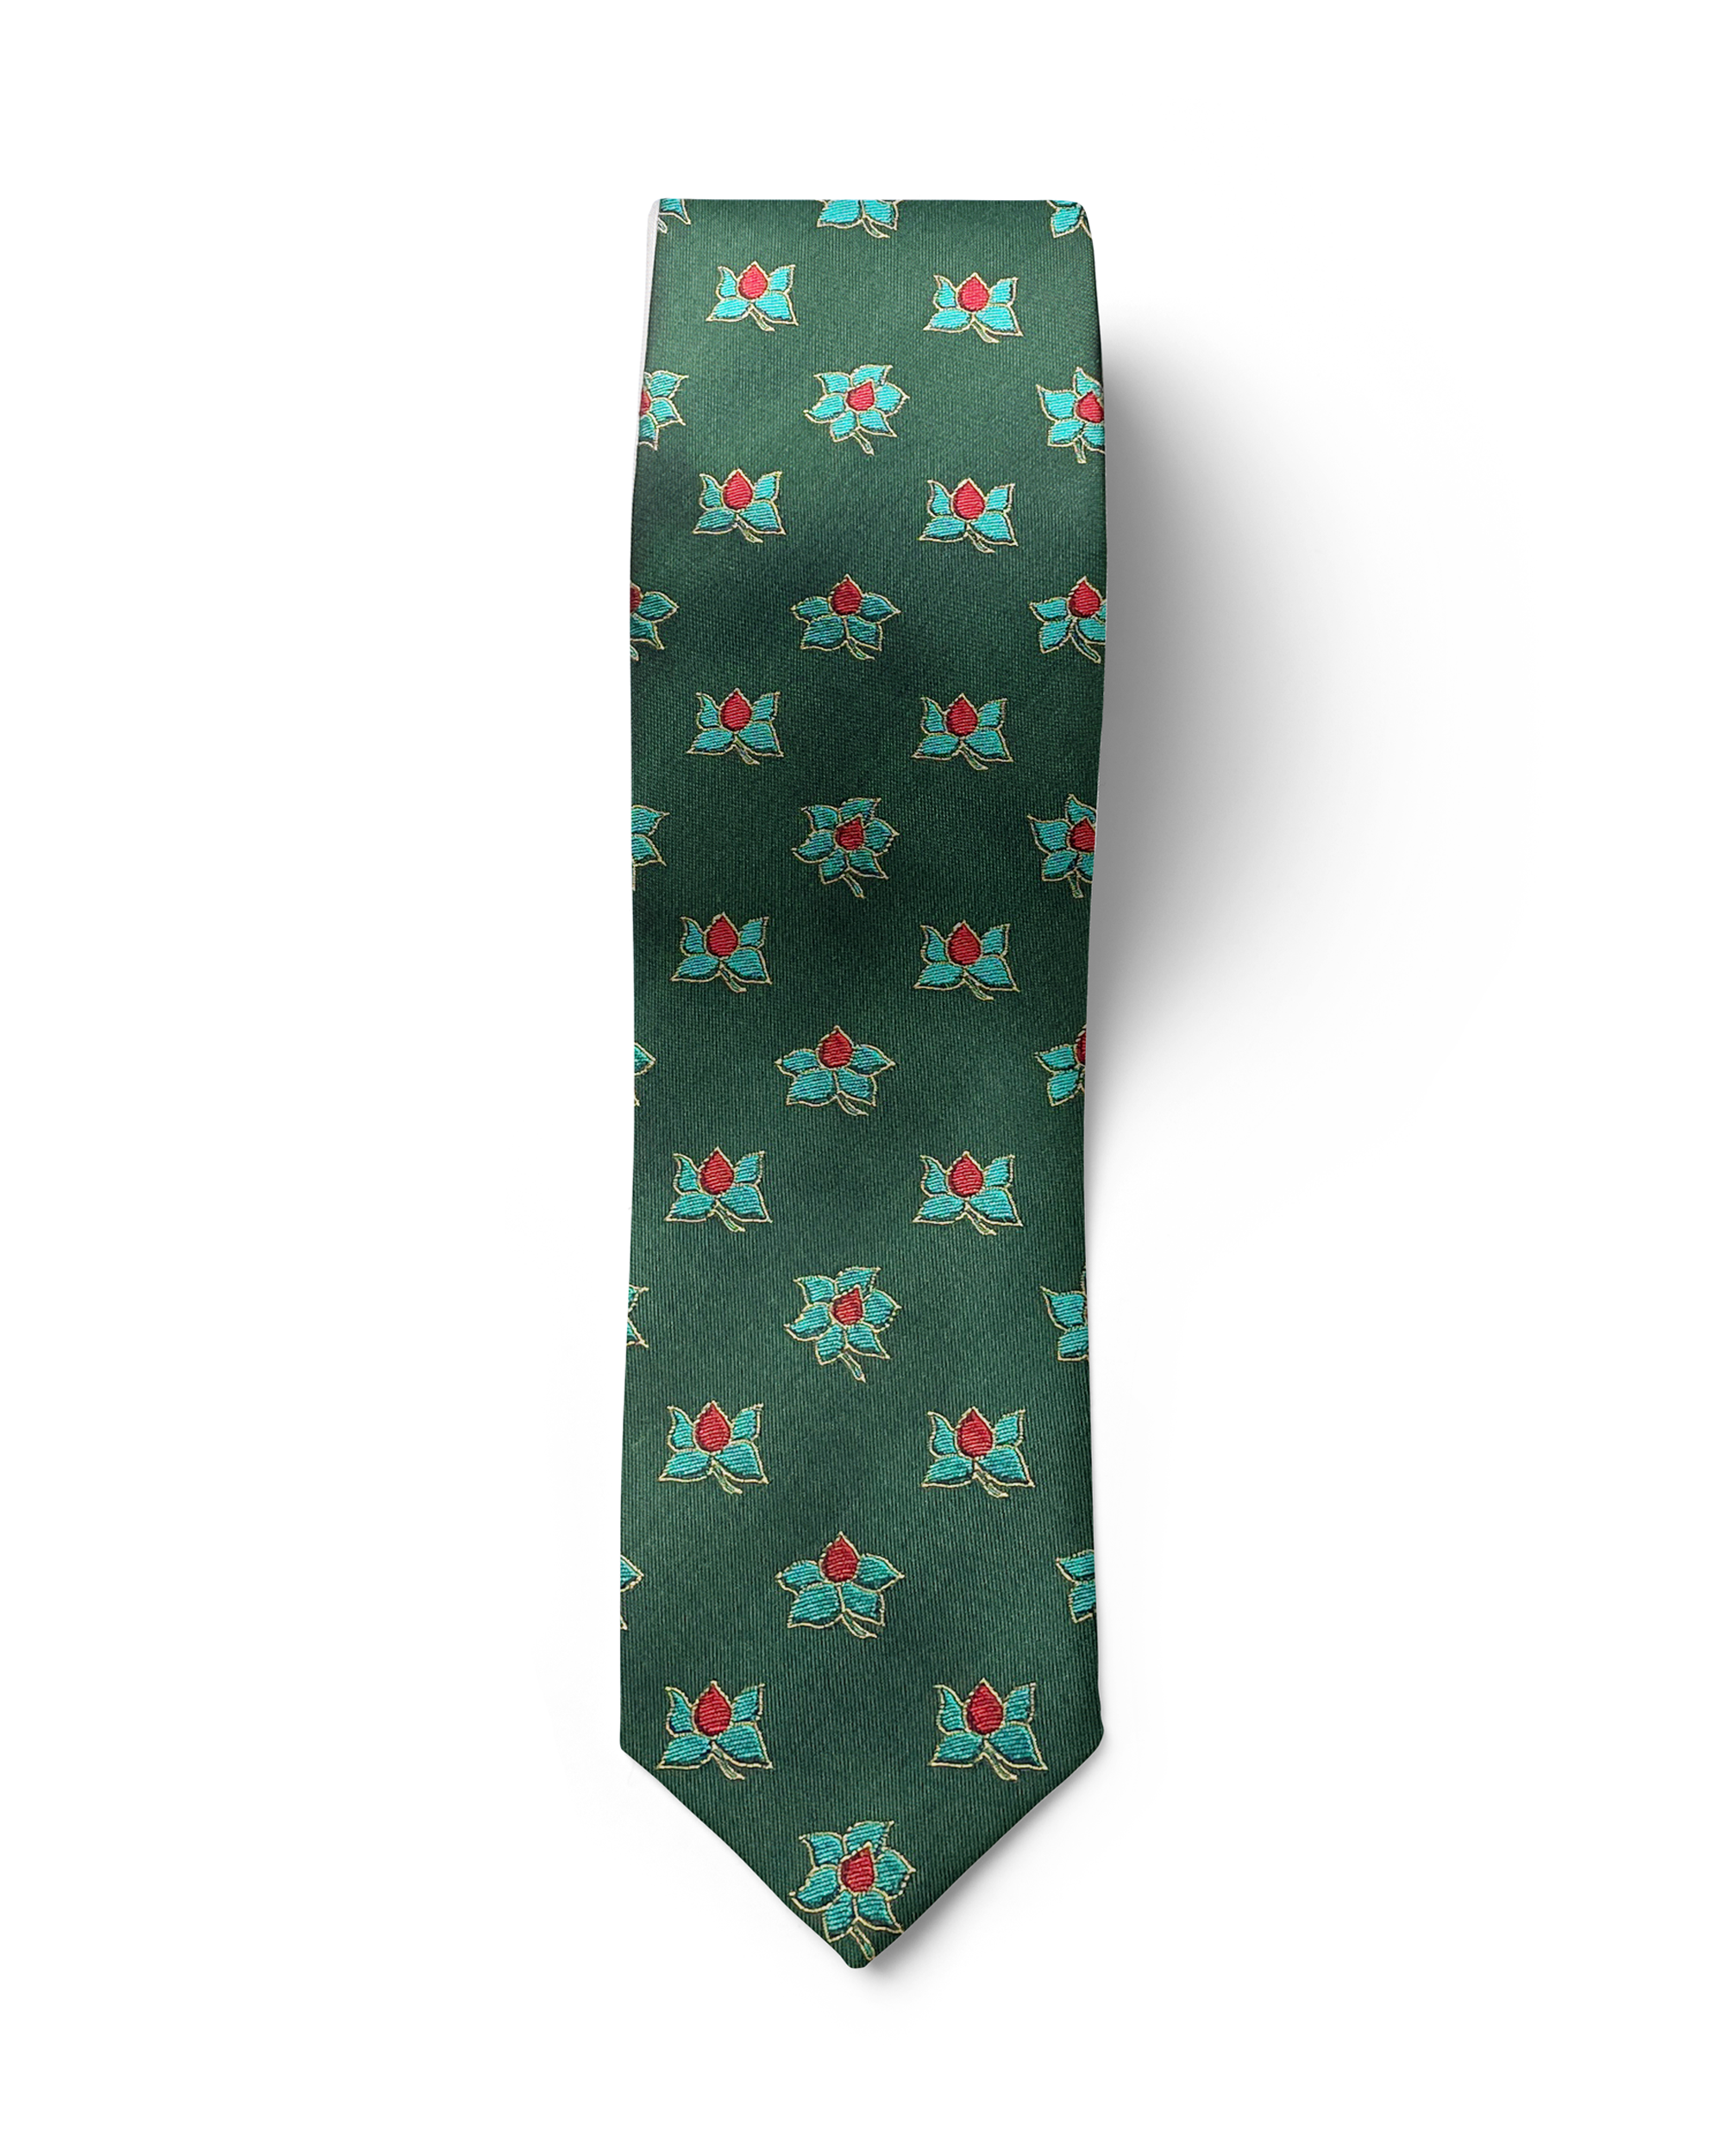 ჟაკარდის აბრეშუმის ჰალსტუხი „ლეგა მაგნოლია“ (მწვანე)